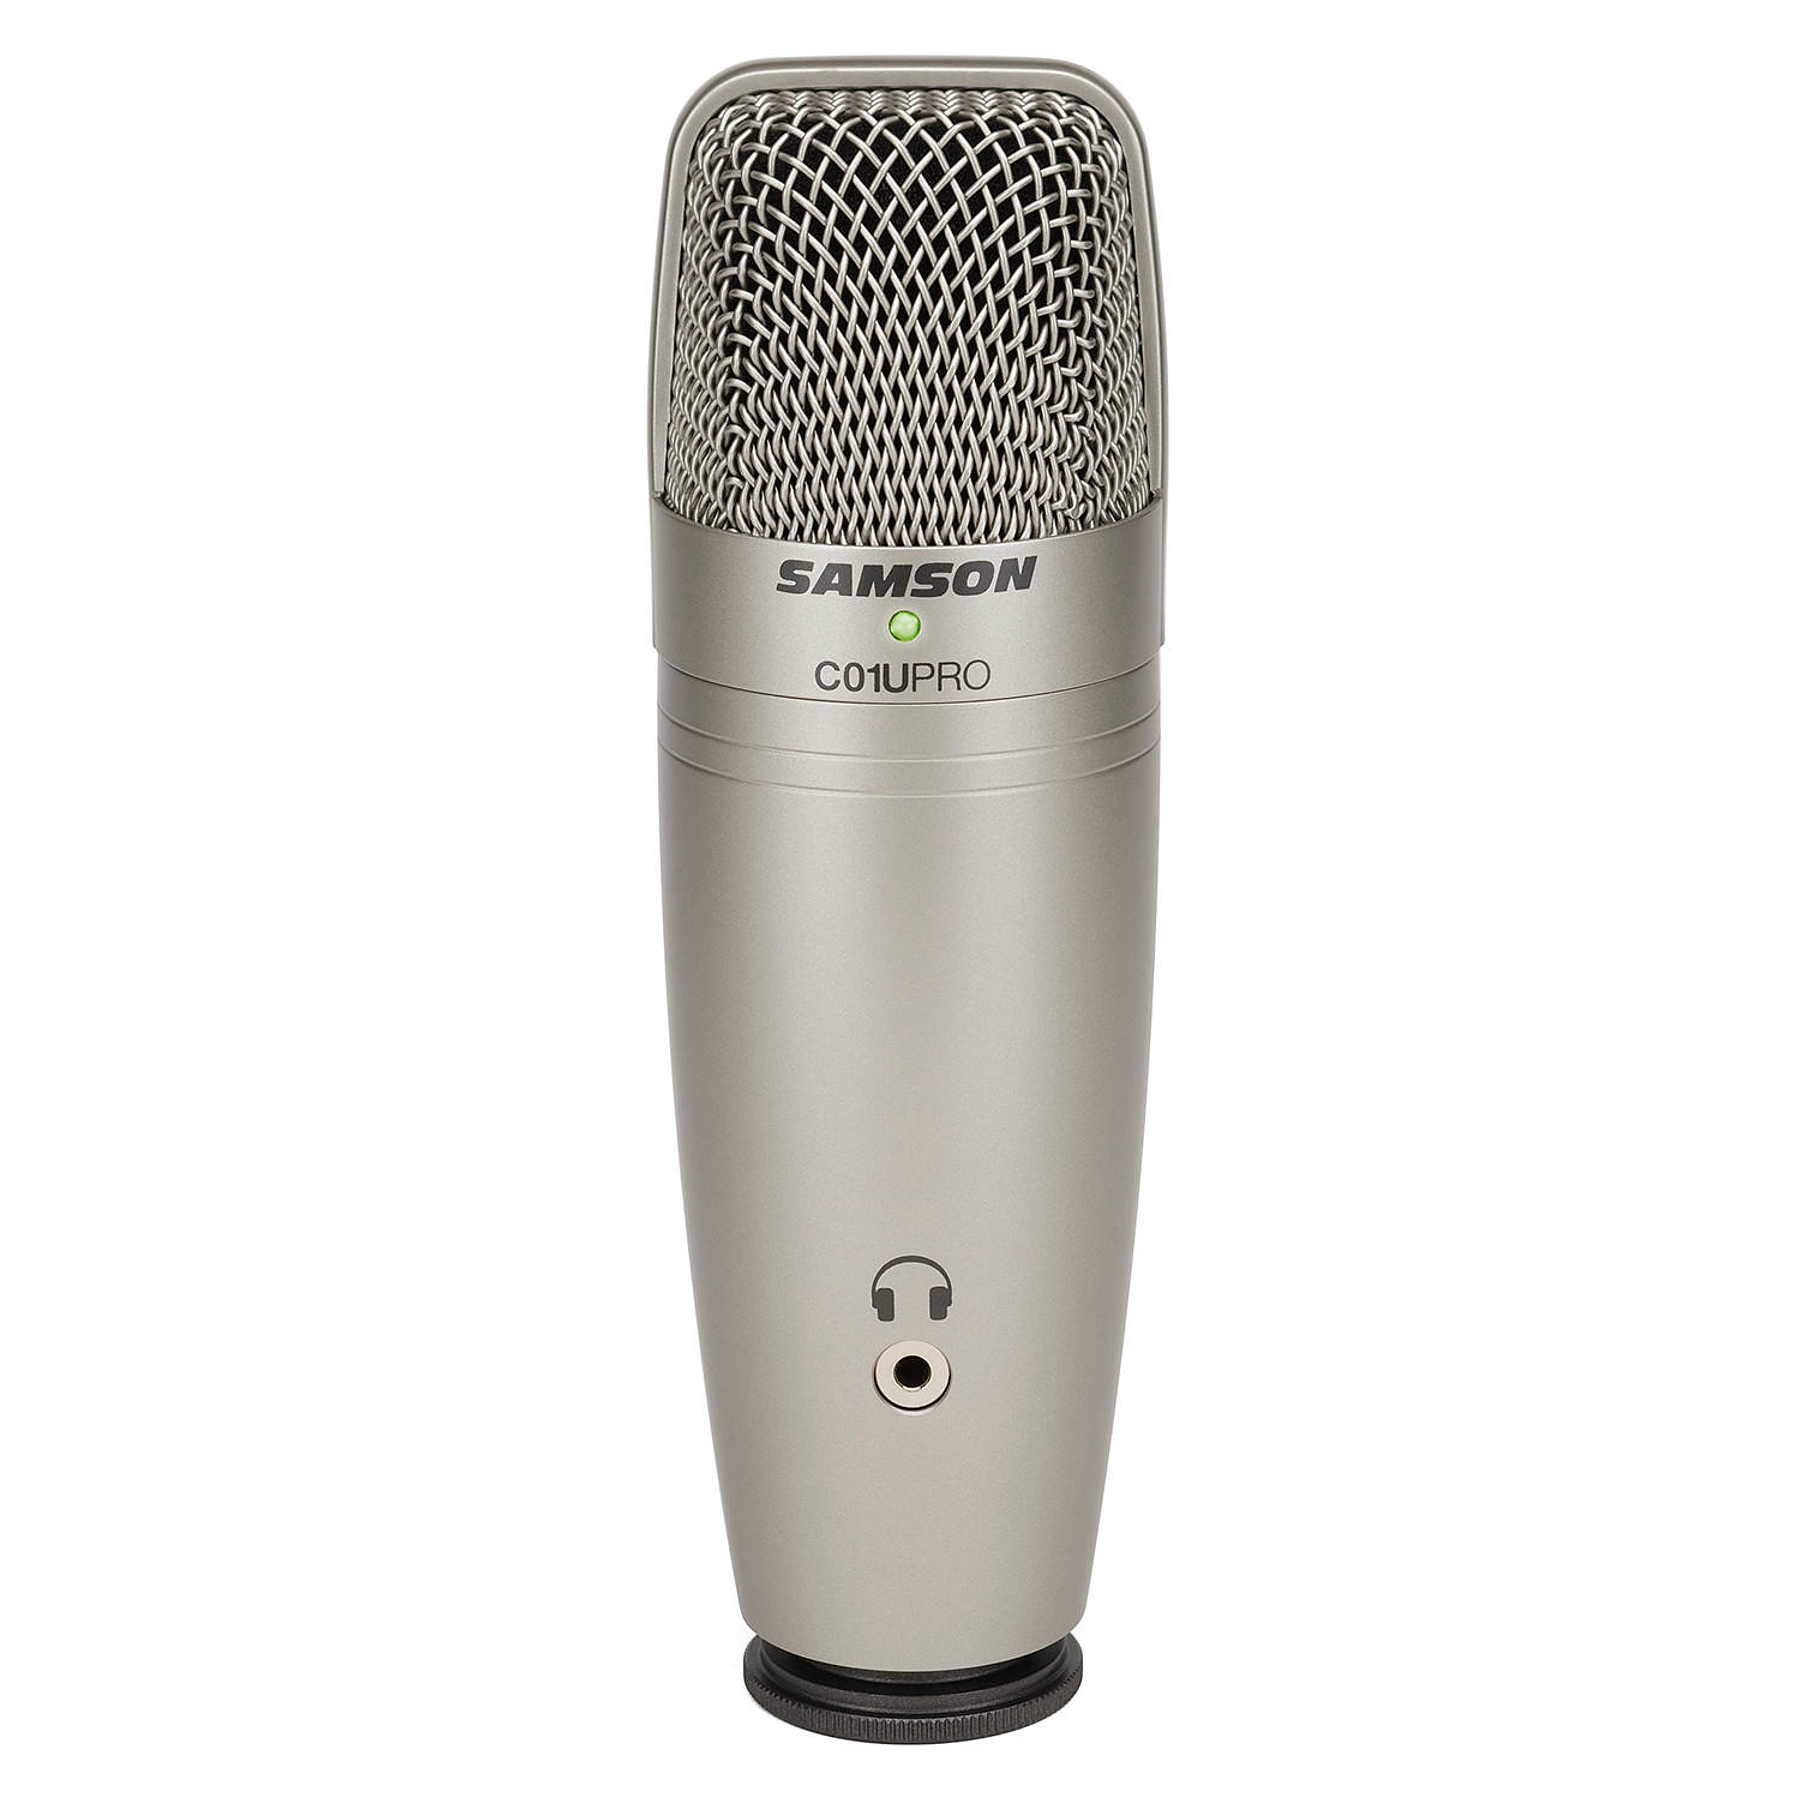 Credo Elevado recibir Microfono condensador USB Samson C01U Pro